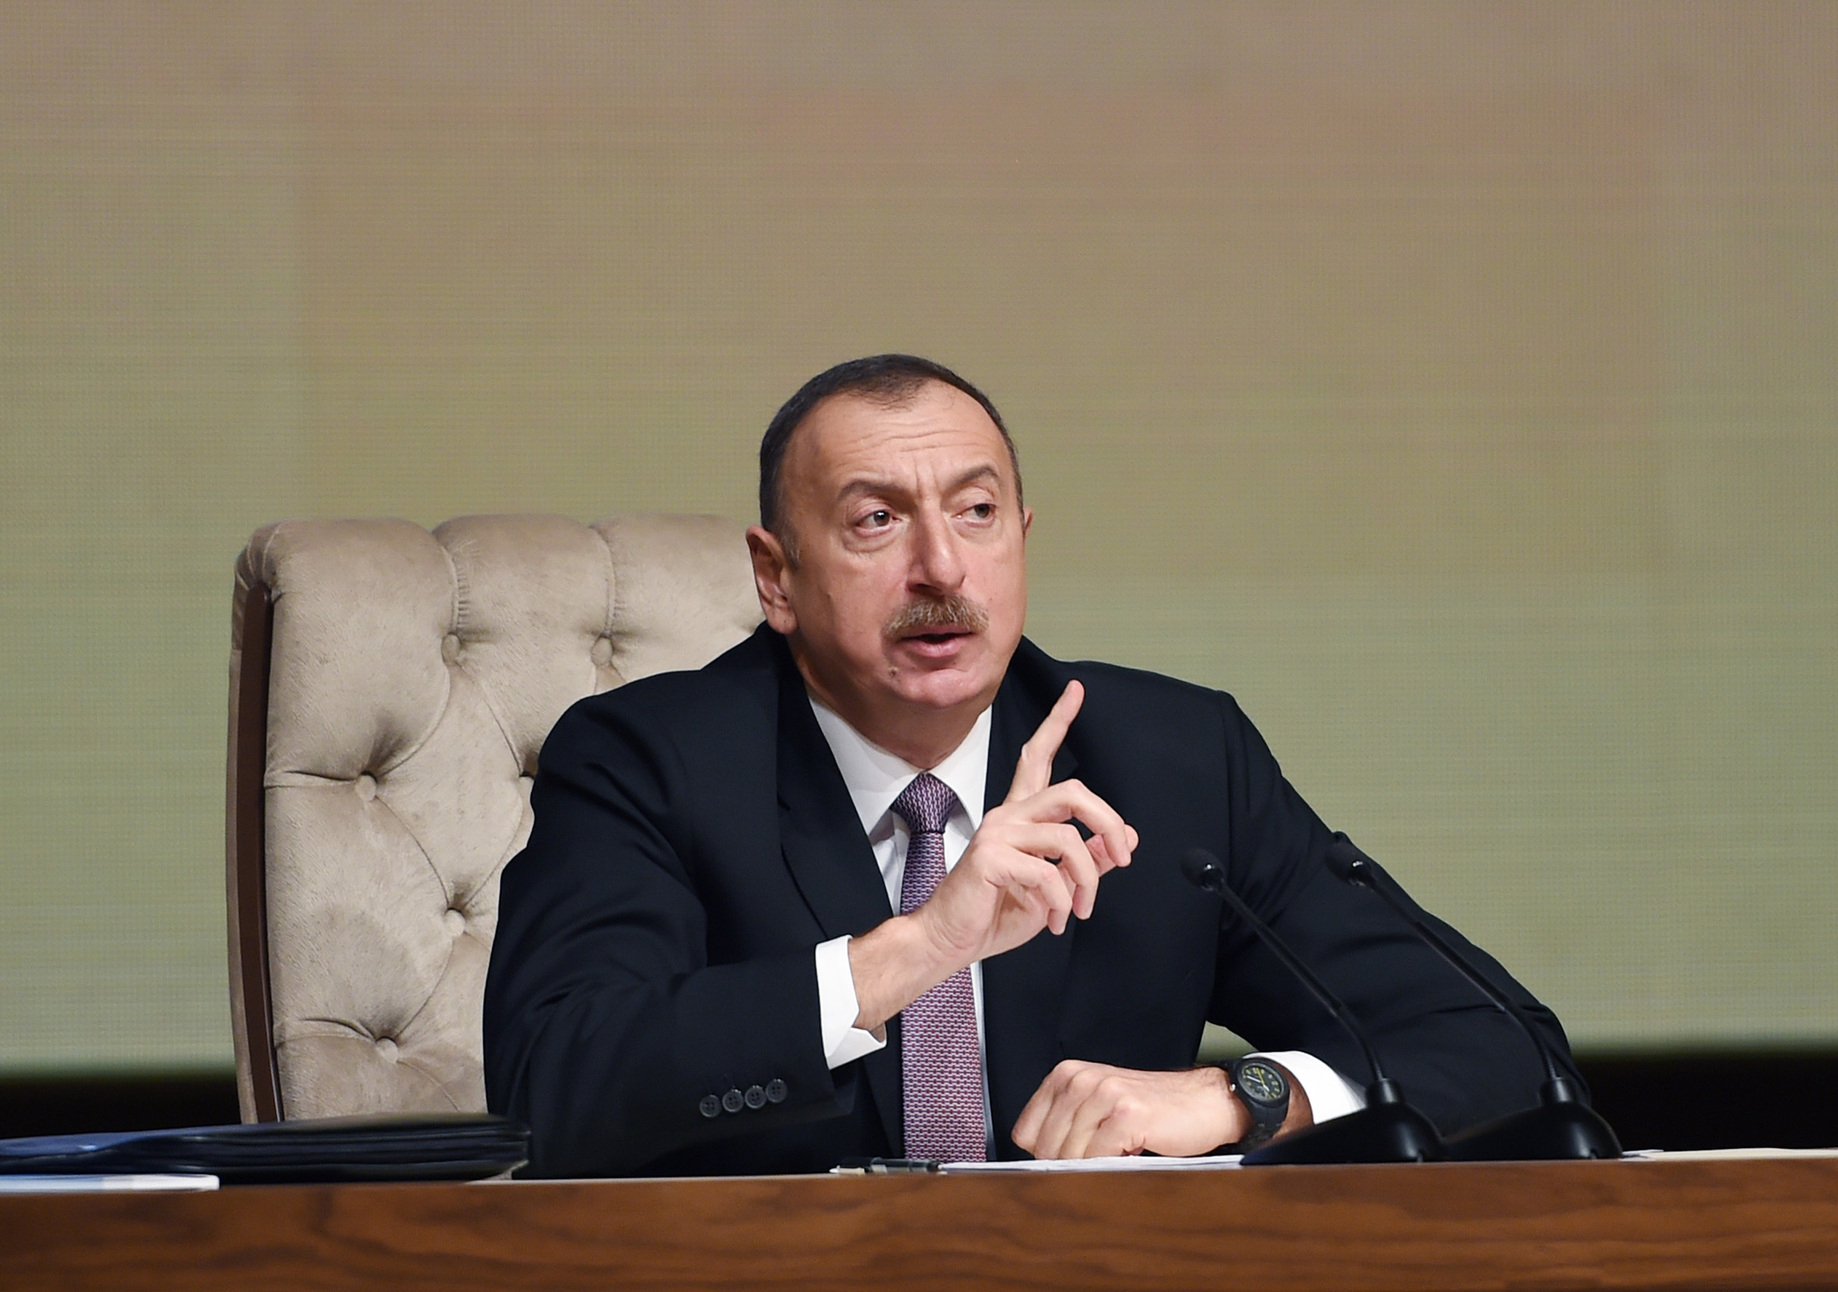 Ильхам Алиев: Азербайджан покончил с оккупацией благодаря поддержке Турции